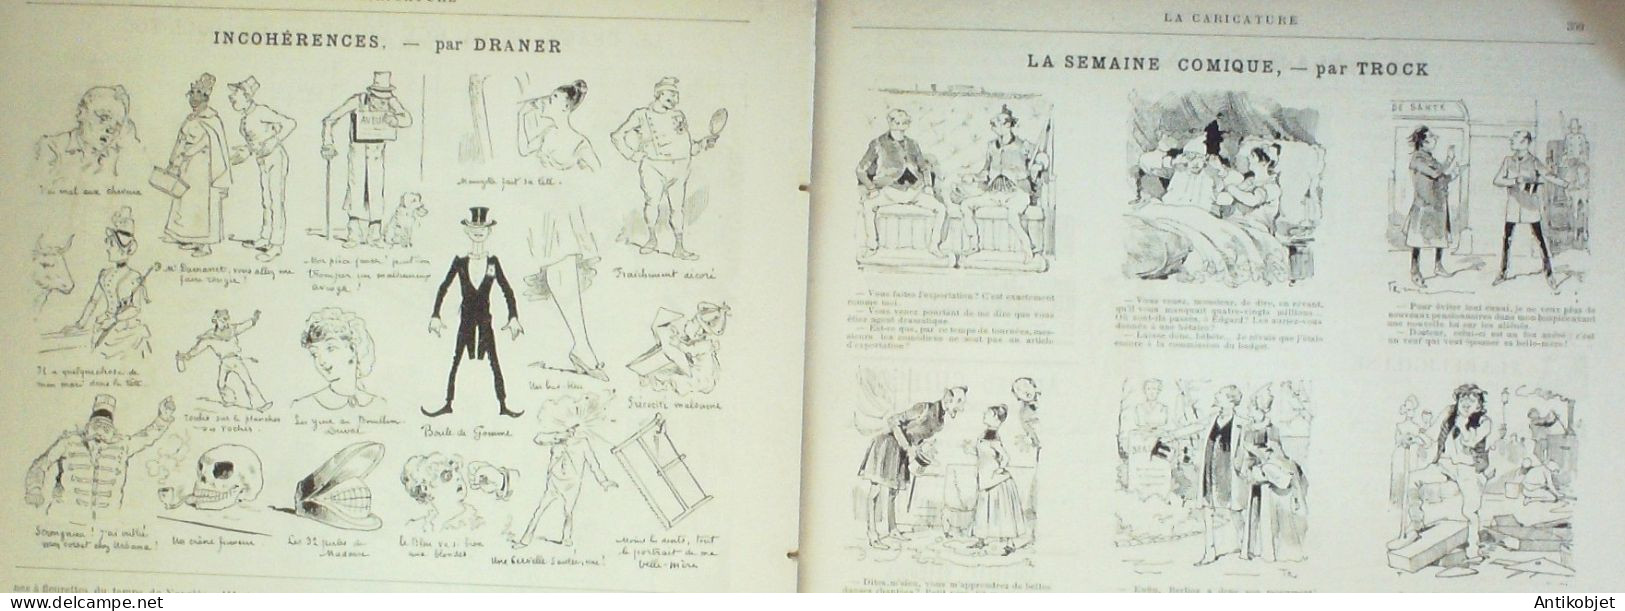 La Caricature 1886 N°357 Draner Vigeant Par Luque Drame Rue Chose Coll-Toc Caran D'Ache - Zeitschriften - Vor 1900